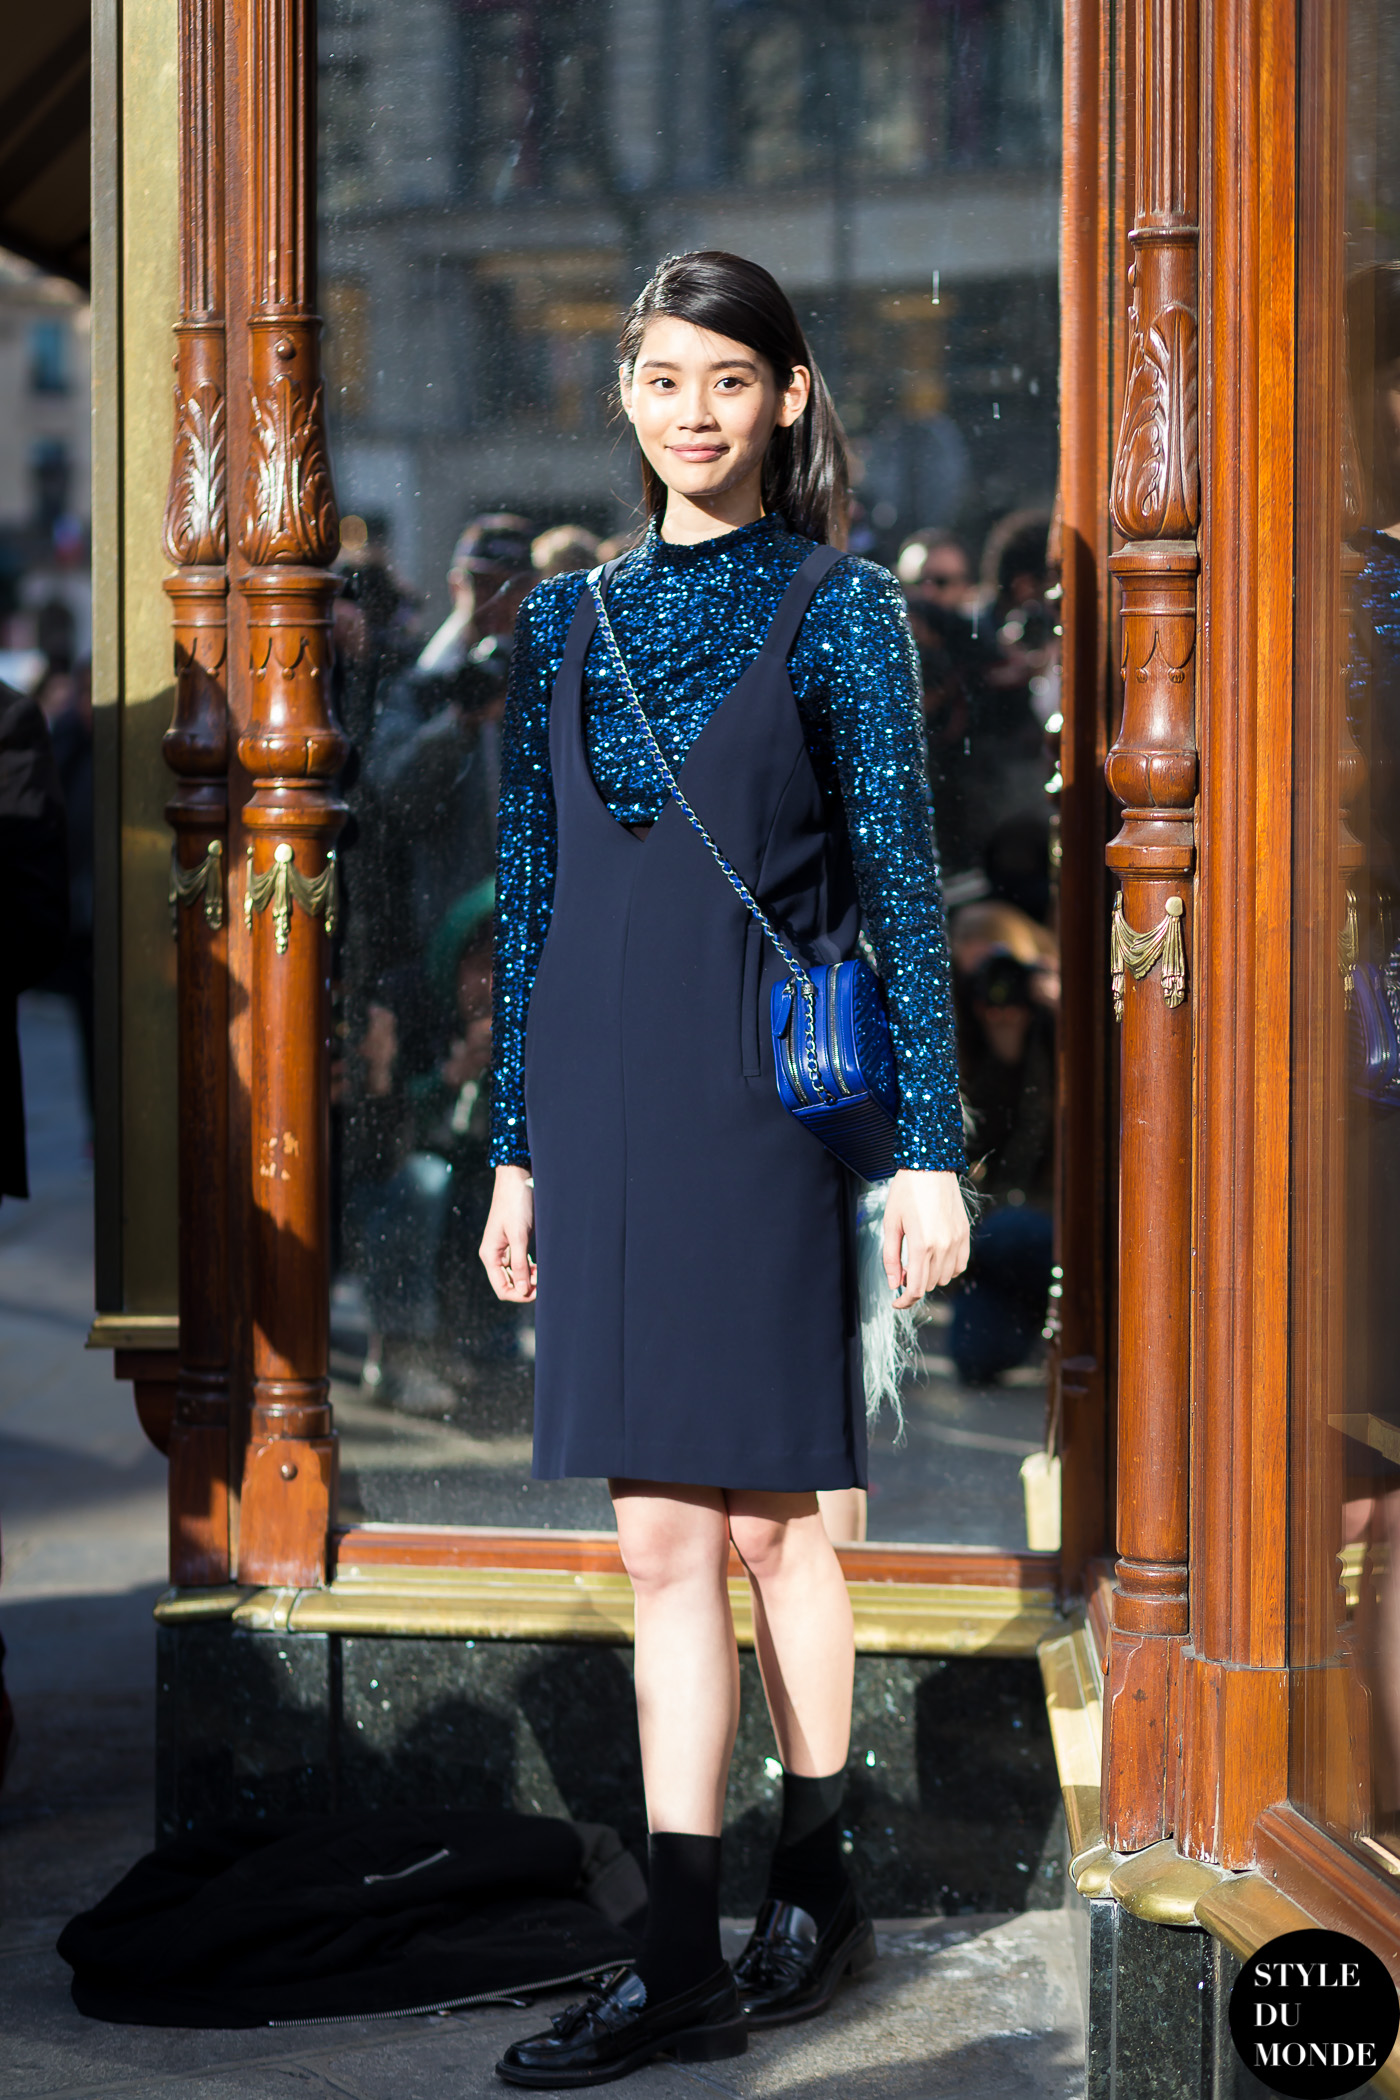 Ming Xi - STYLE DU MONDE | Street Style Street Fashion Photos